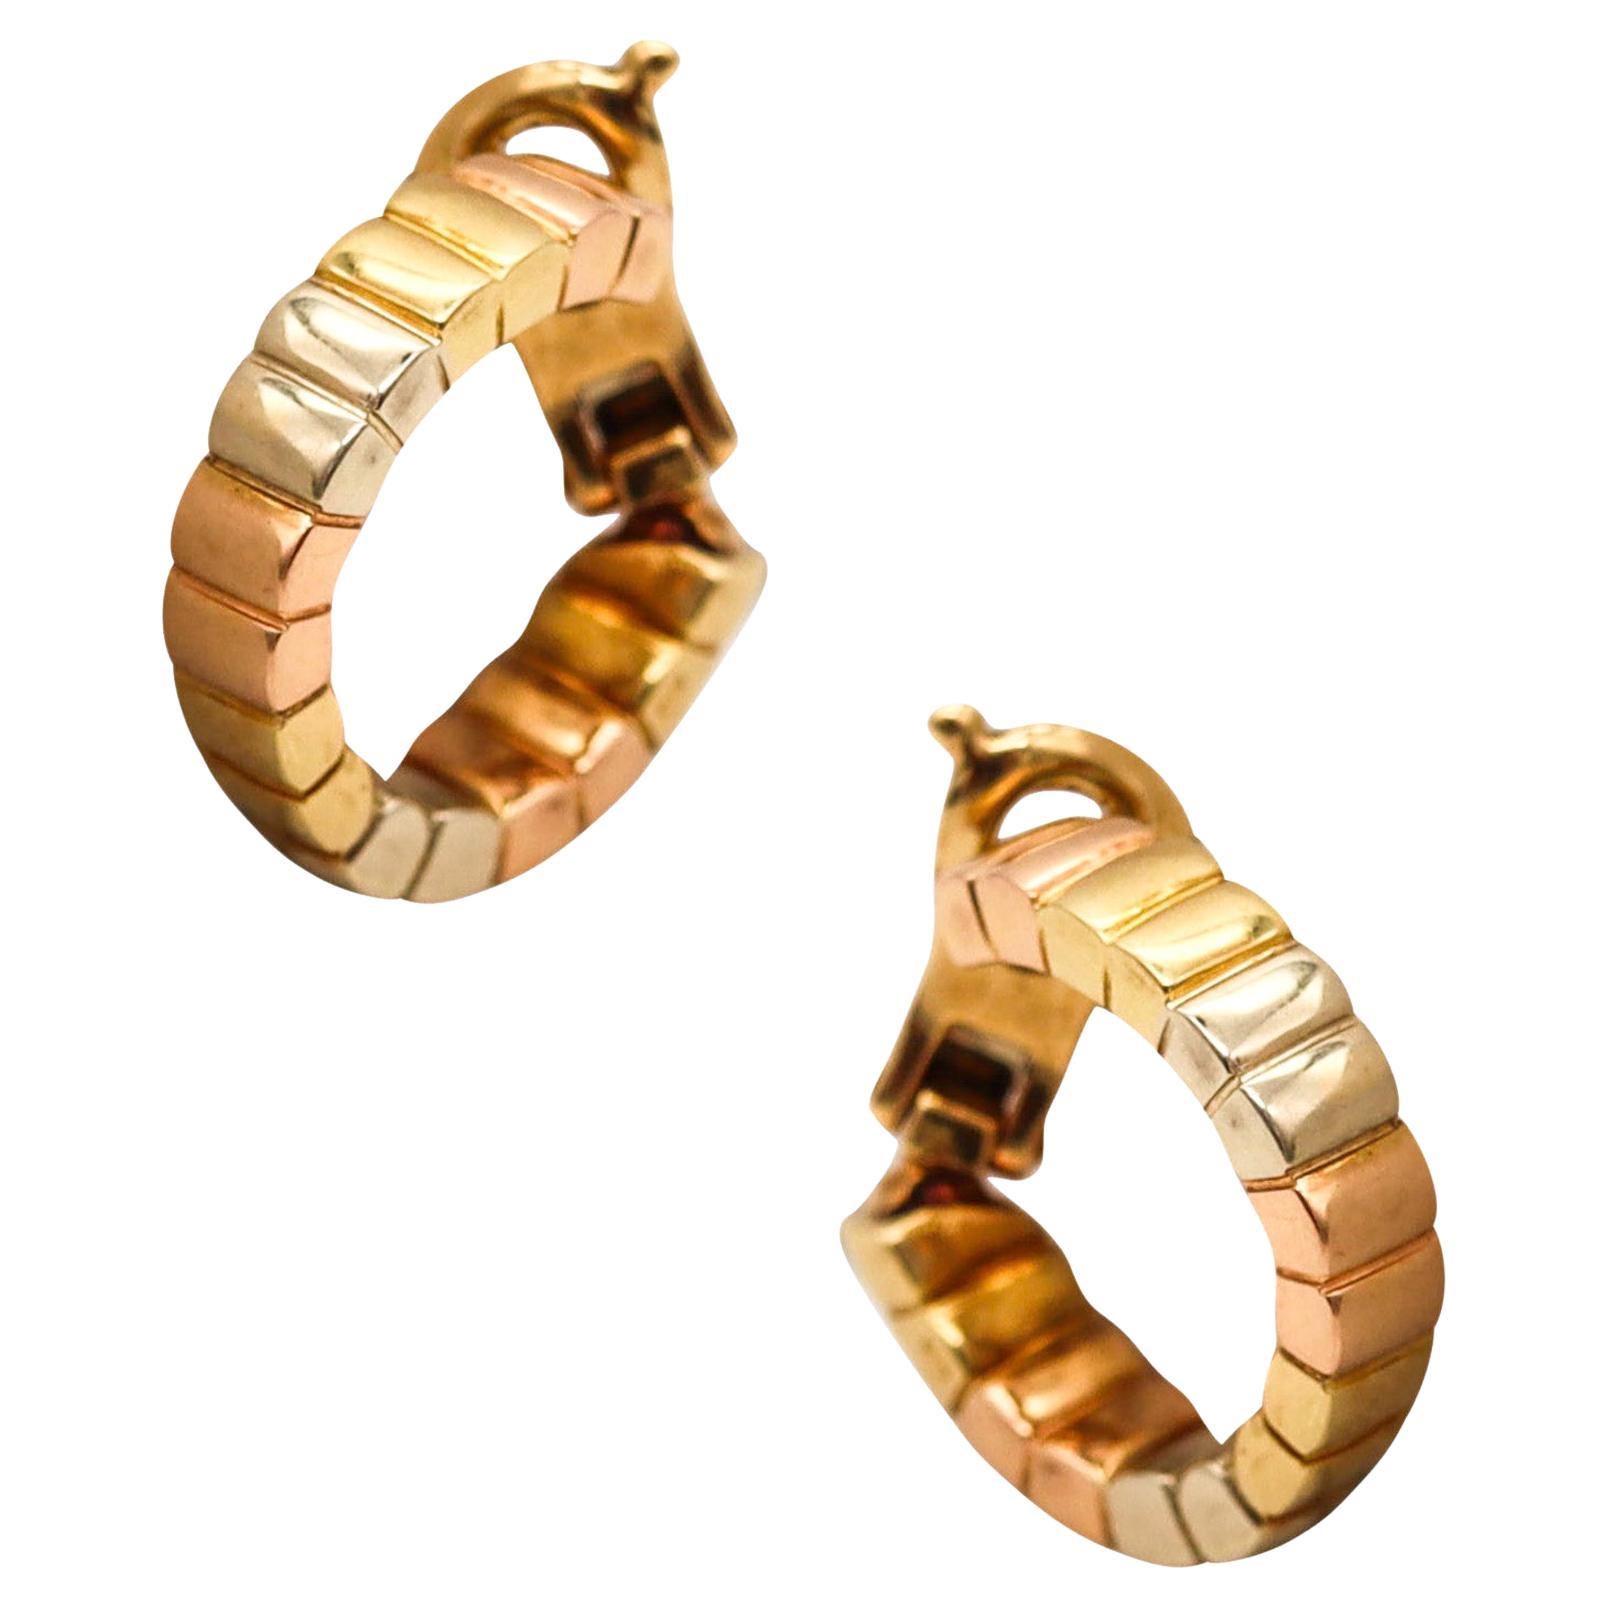 Van Cleef & Arpels Paris Modernist Three Color Hoops Earrings in Solid 18Kt Gold For Sale